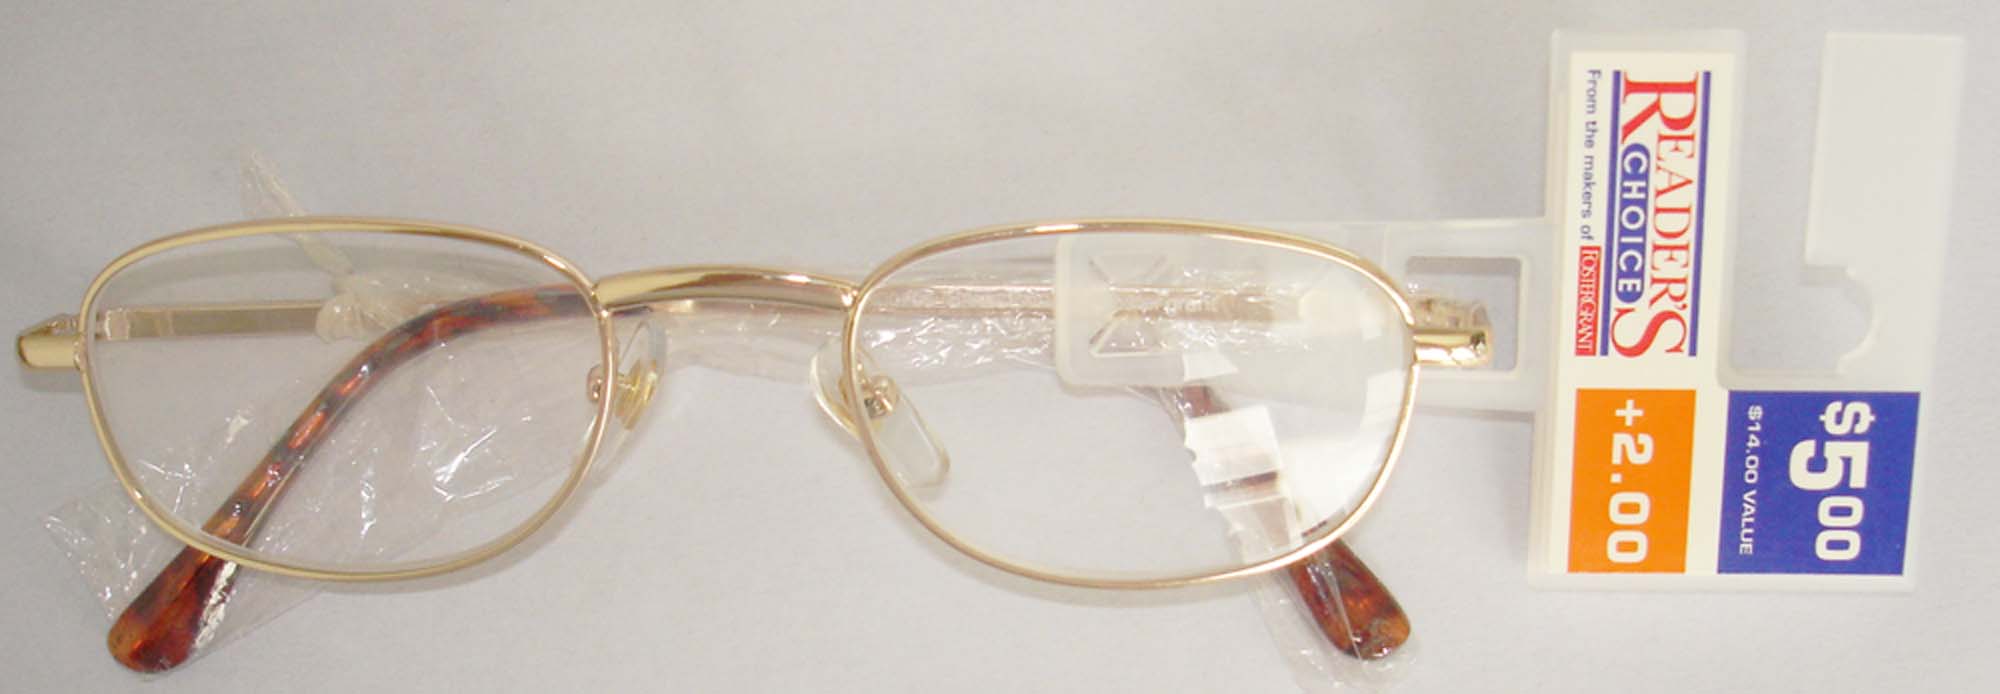  H3292 Reading Glasses (H3292 очки для чтения)